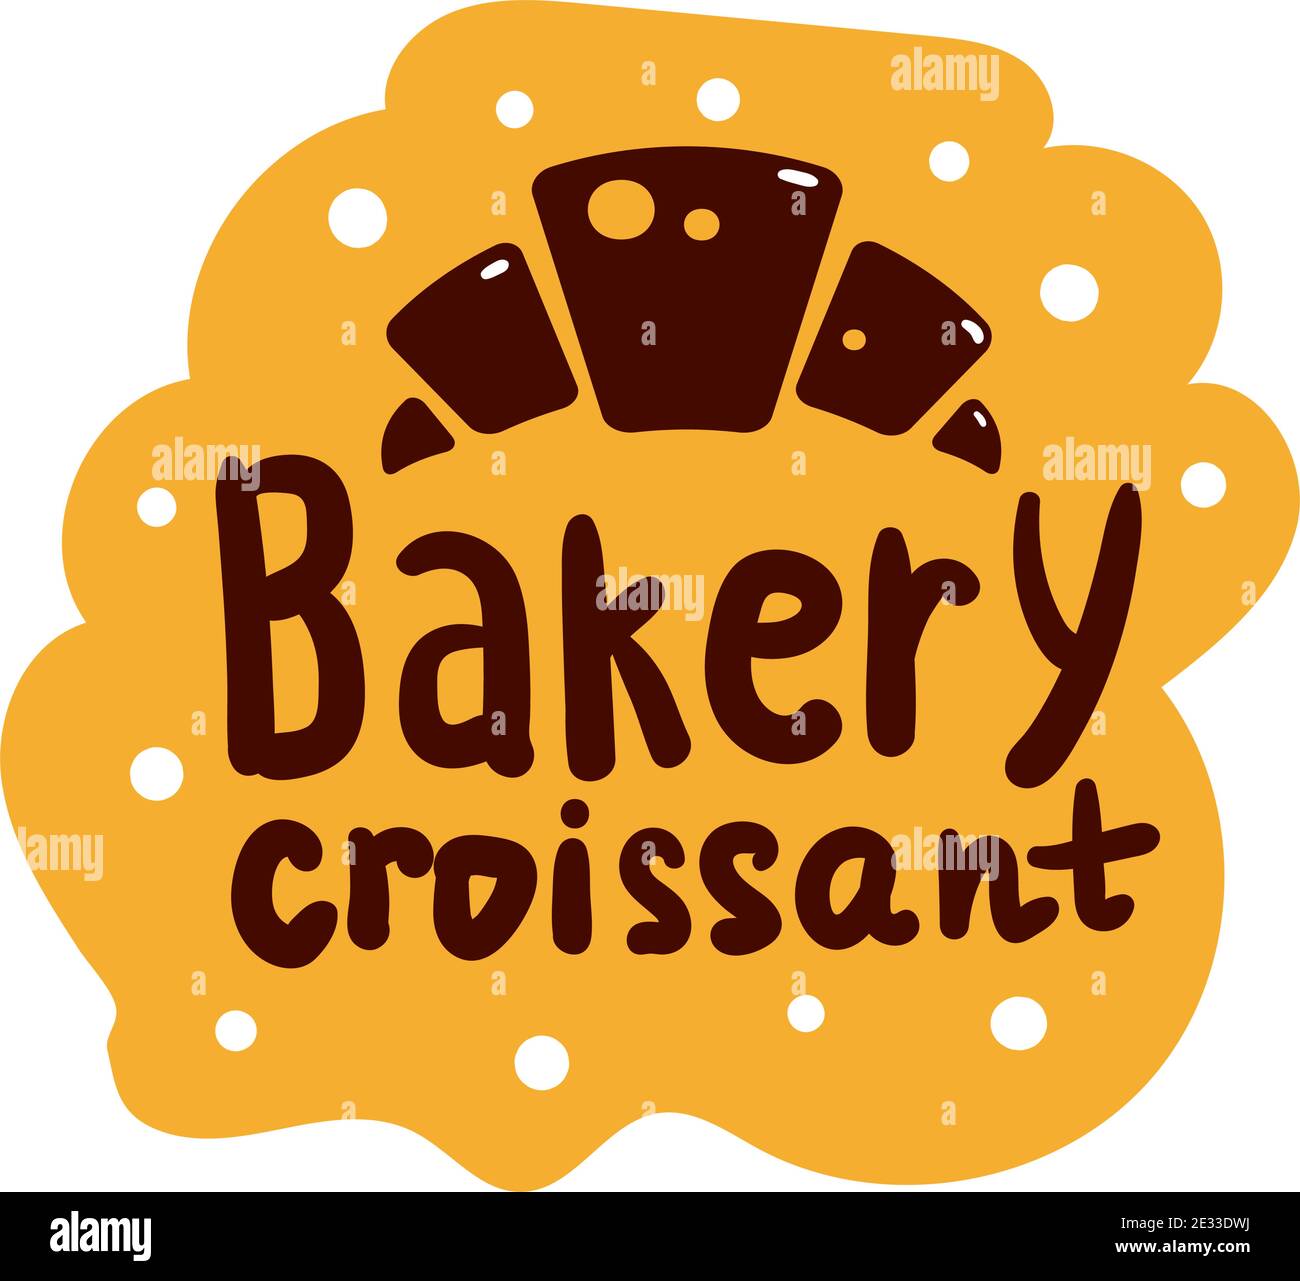 Bakery Croissant Produktlogo und Ikone mit Schriftzug. Flache Bagel und Croissant und Baguette Silhouetten mit Schildern für Konditorei. Essen von doug Stock Vektor